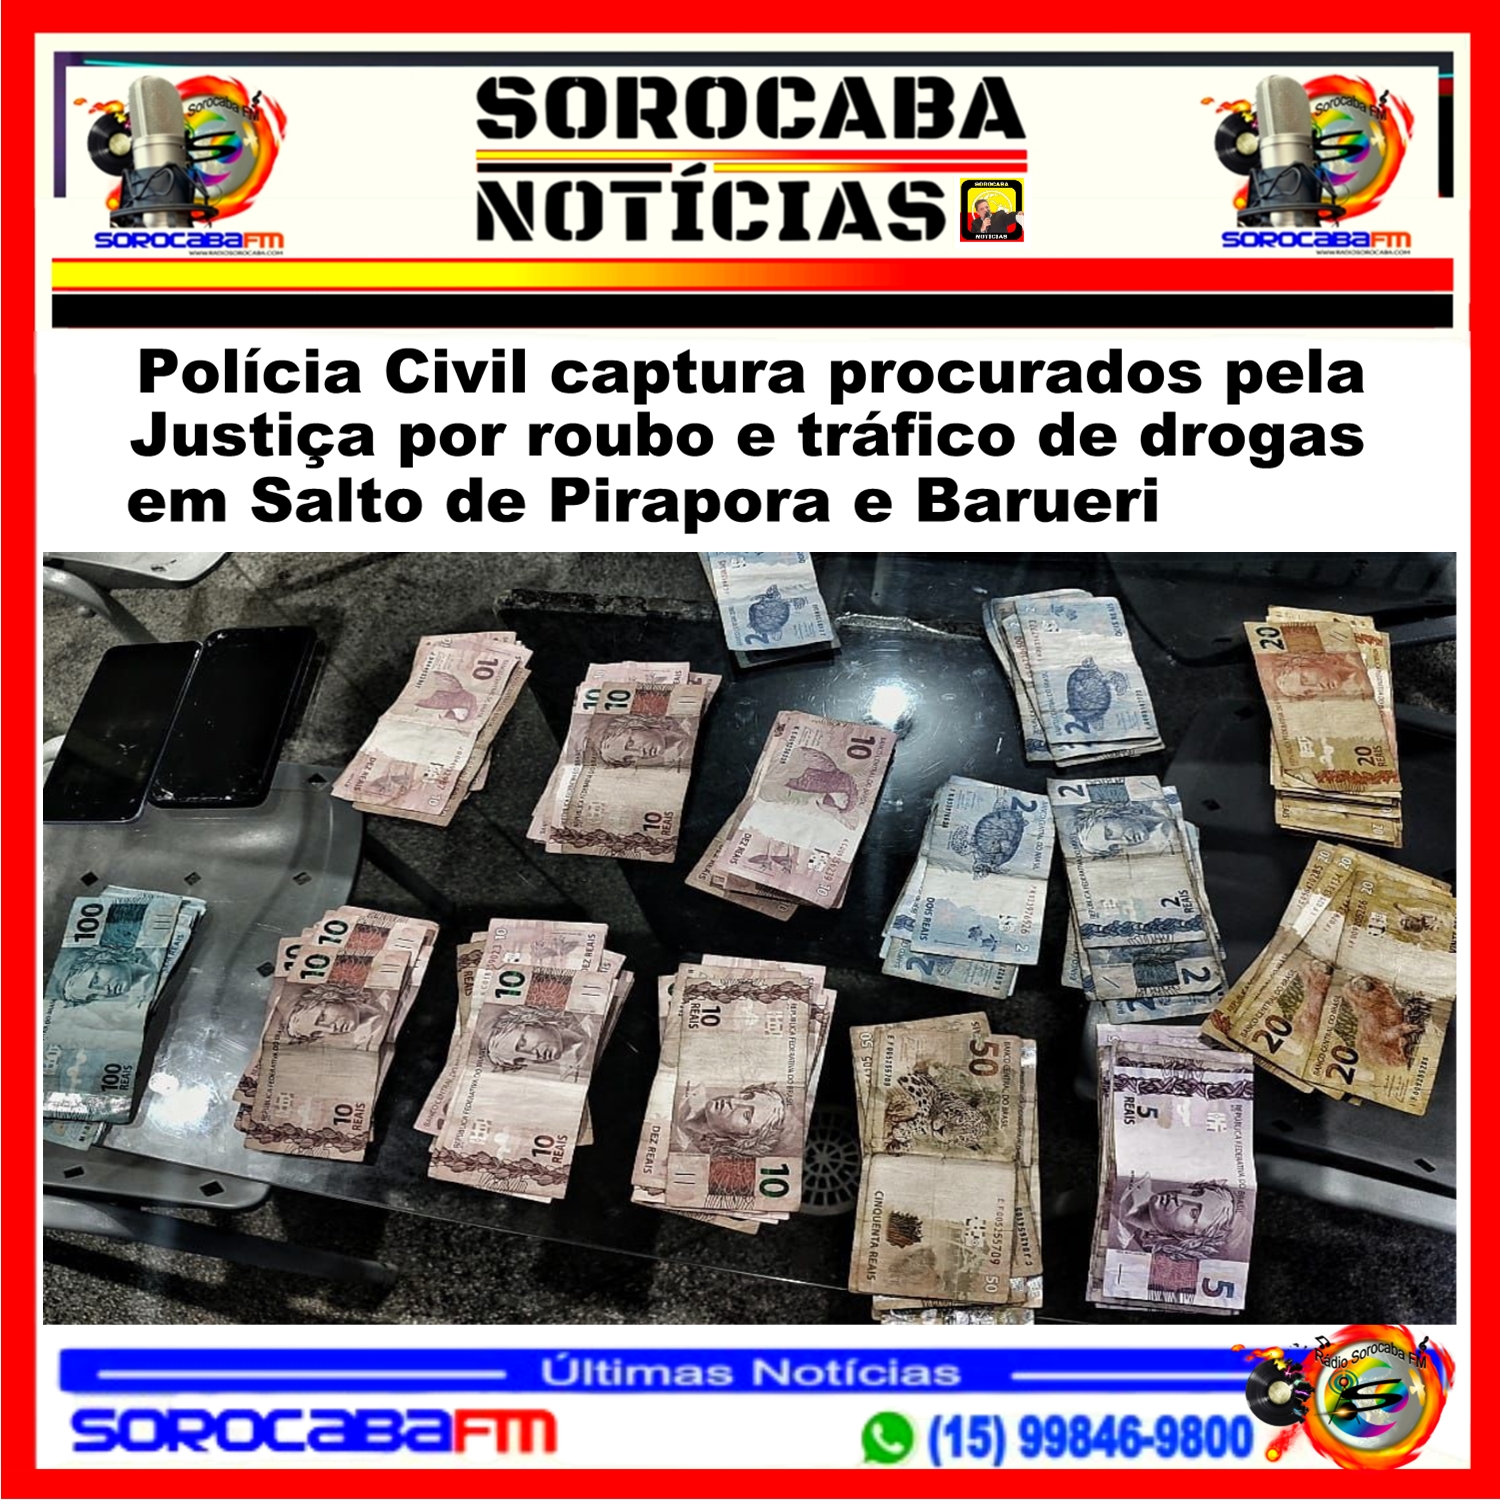 Polícia Civil captura procurados pela Justiça por roubo e tráfico de drogas em Salto de Pirapora e Barueri